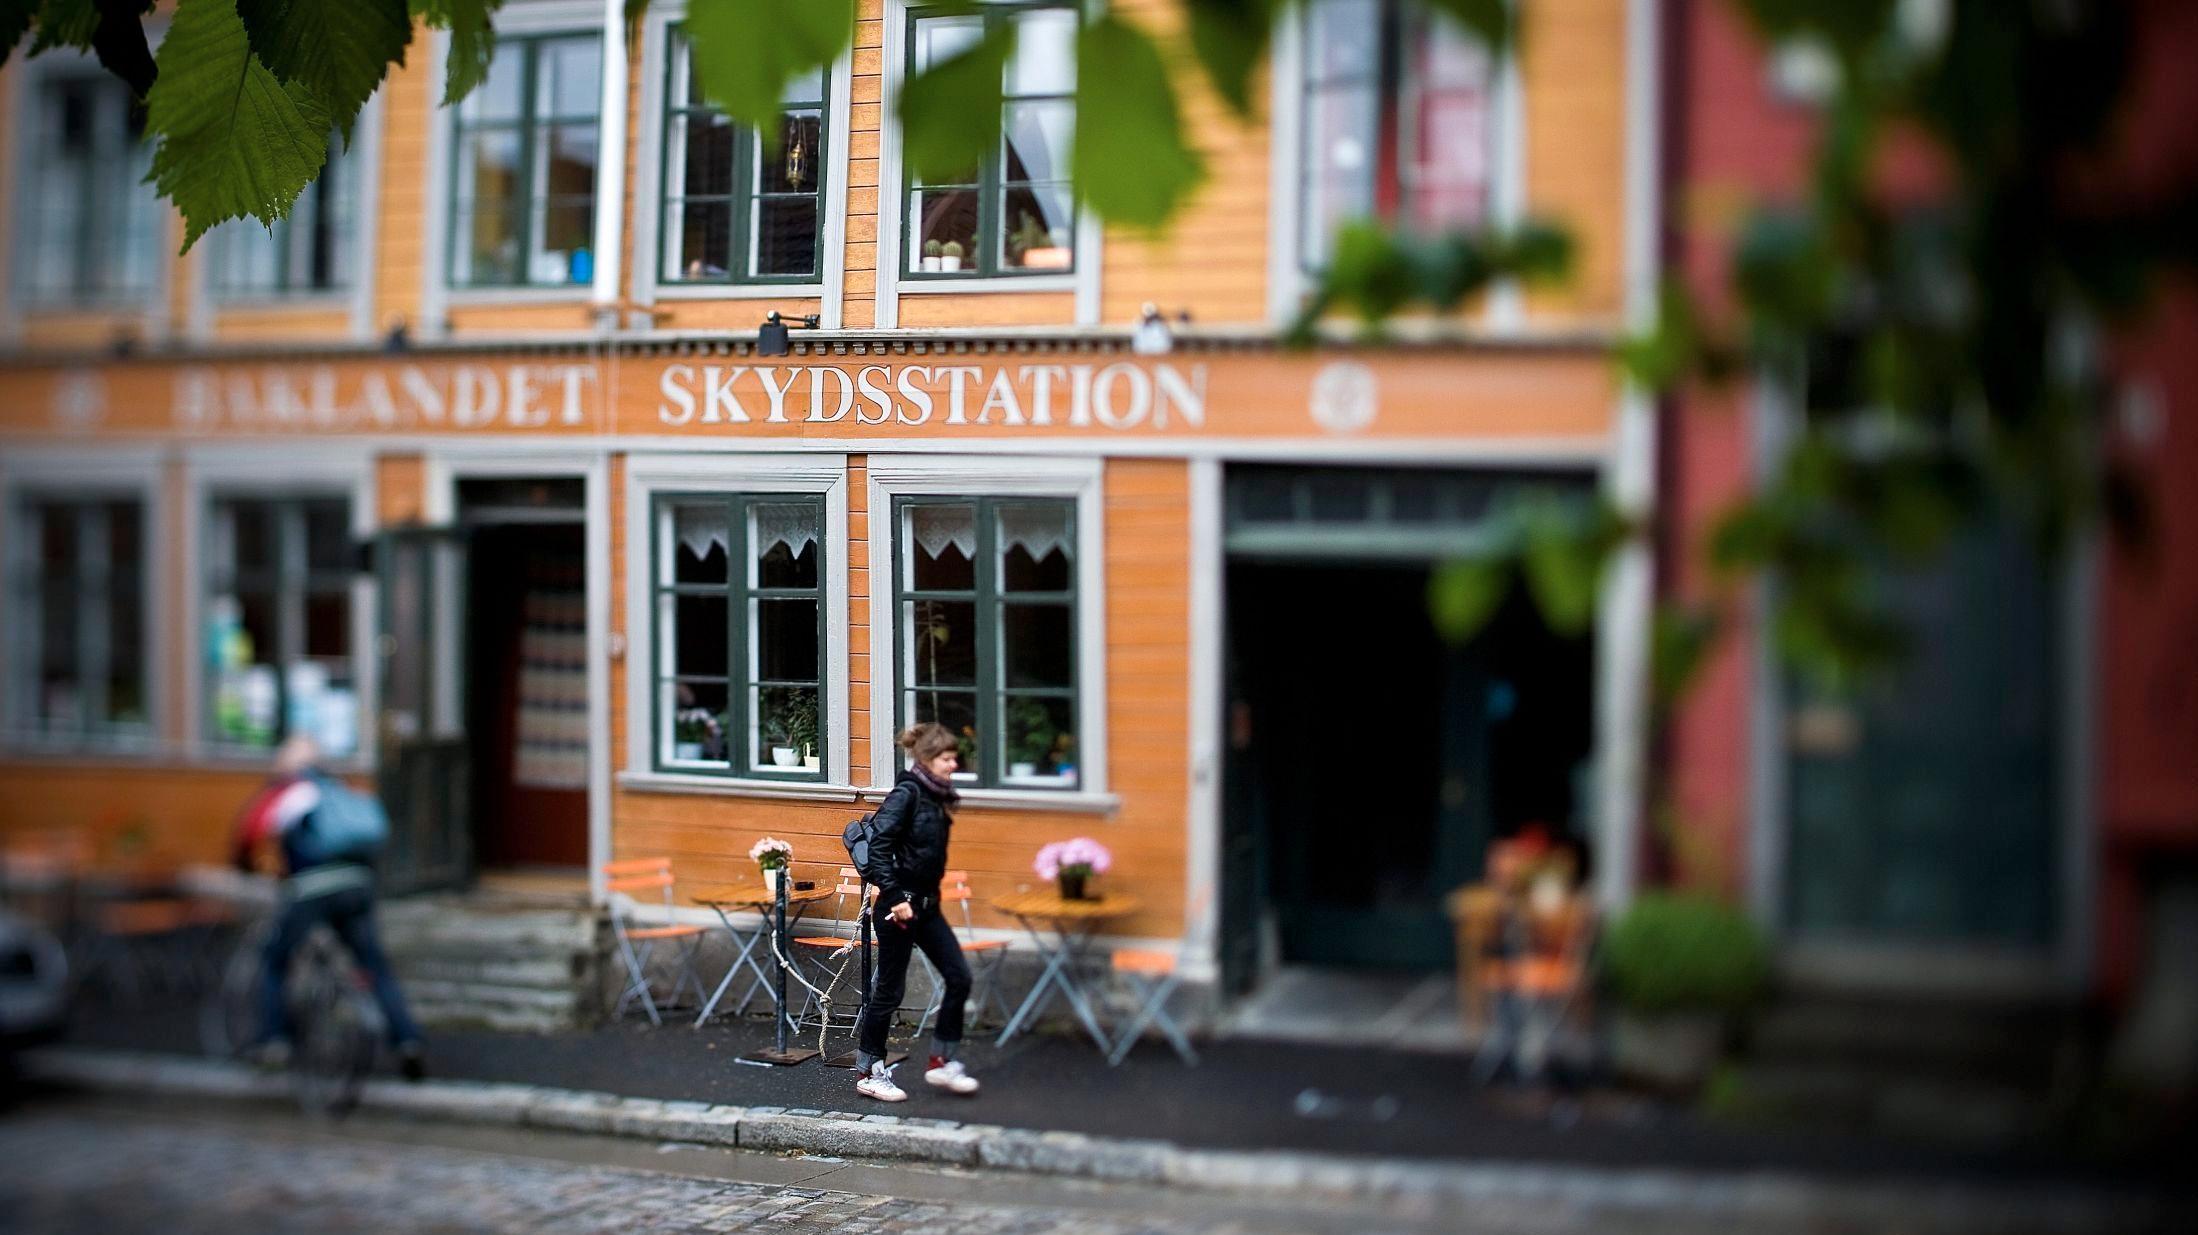 Baklandet Skydsstation er bare én av mange sjamerende kafeer i Trondheim. Foto: Terje Bringedal